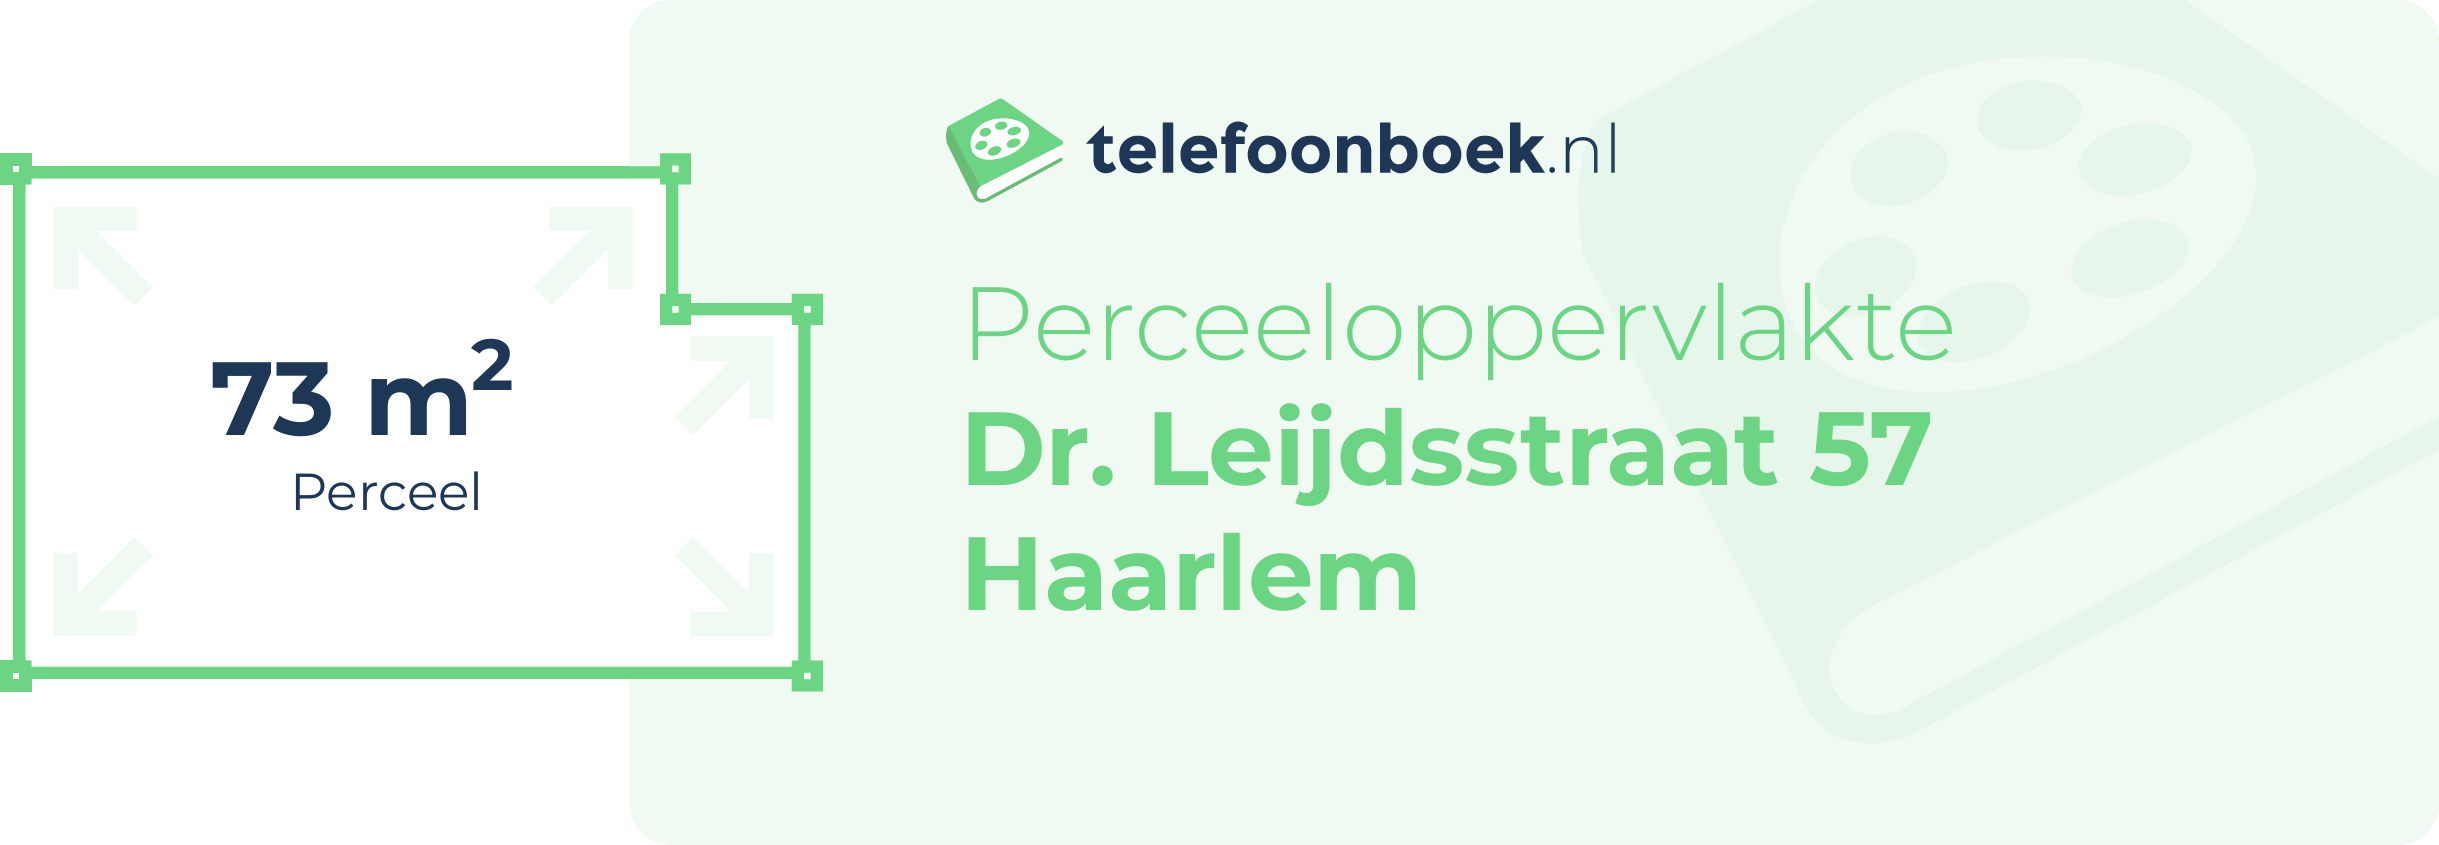 Perceeloppervlakte Dr. Leijdsstraat 57 Haarlem